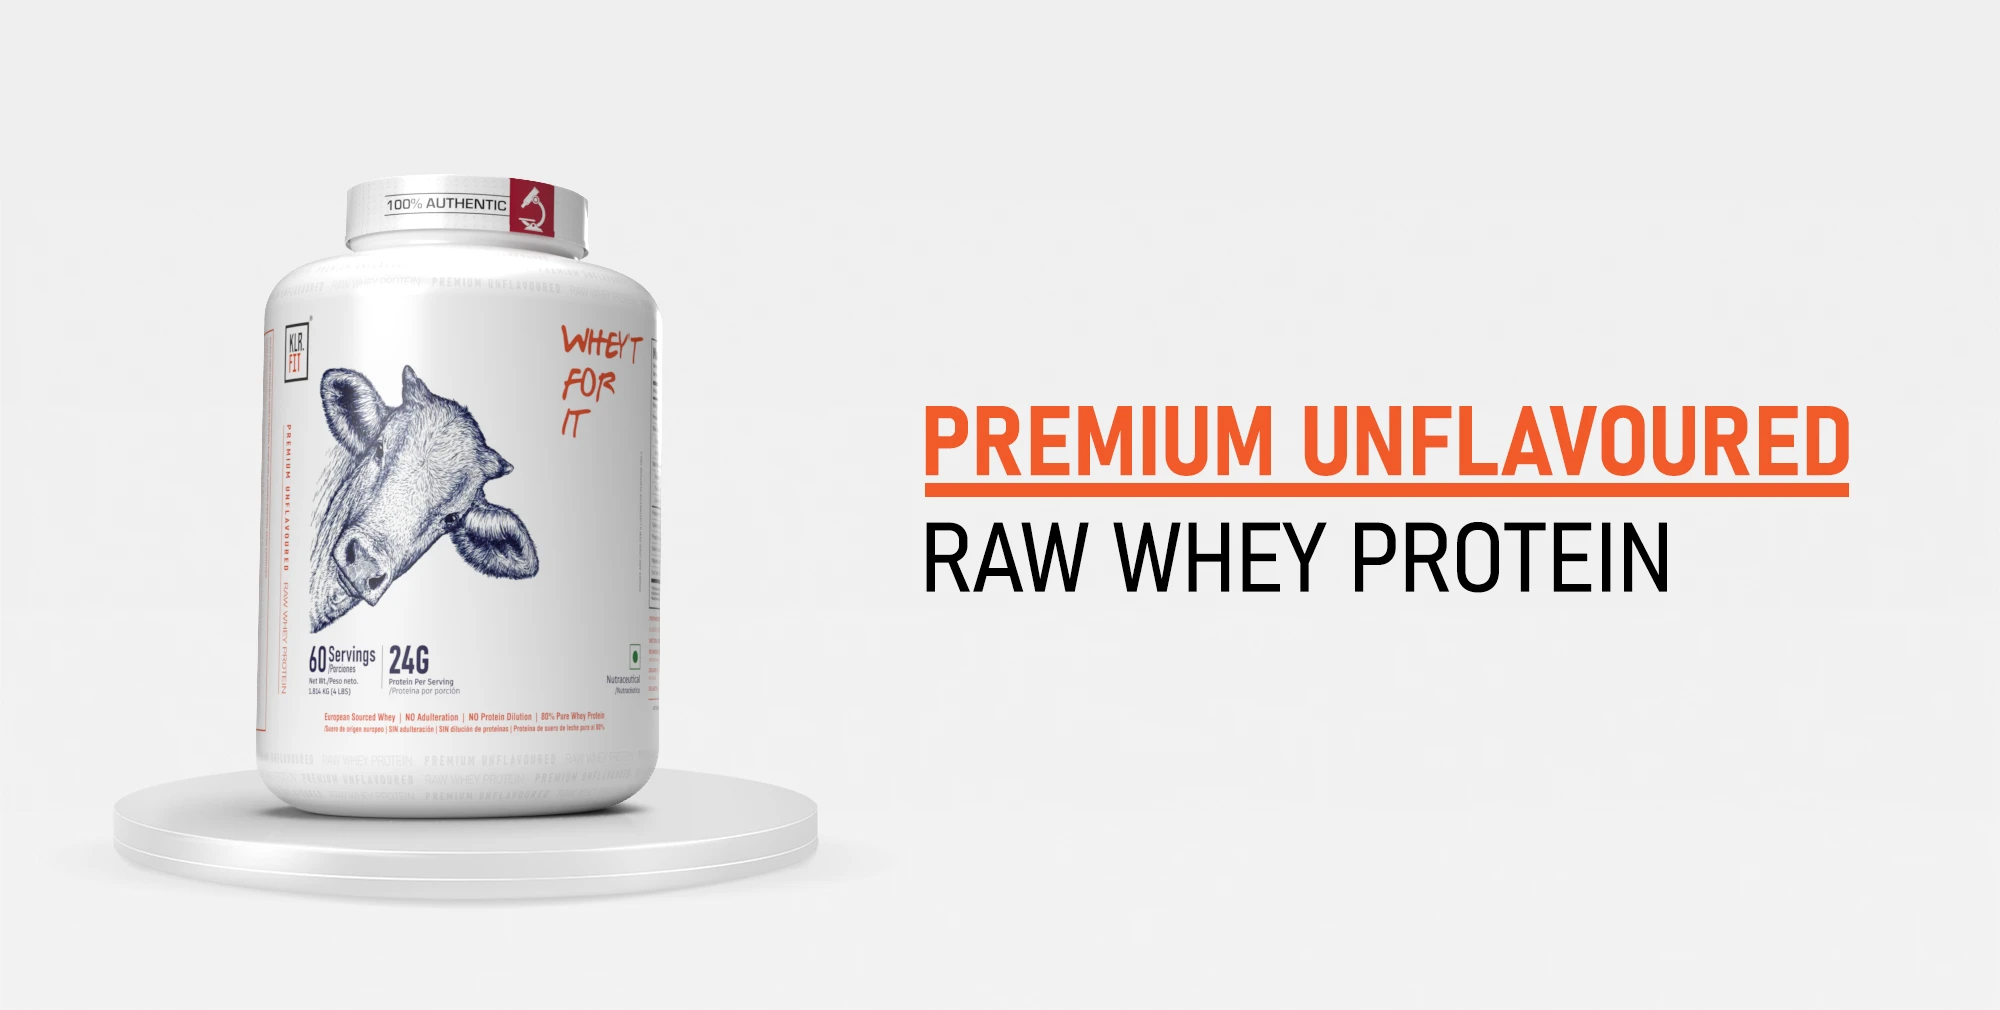 Premium Unflavoured Raw Whey Protein